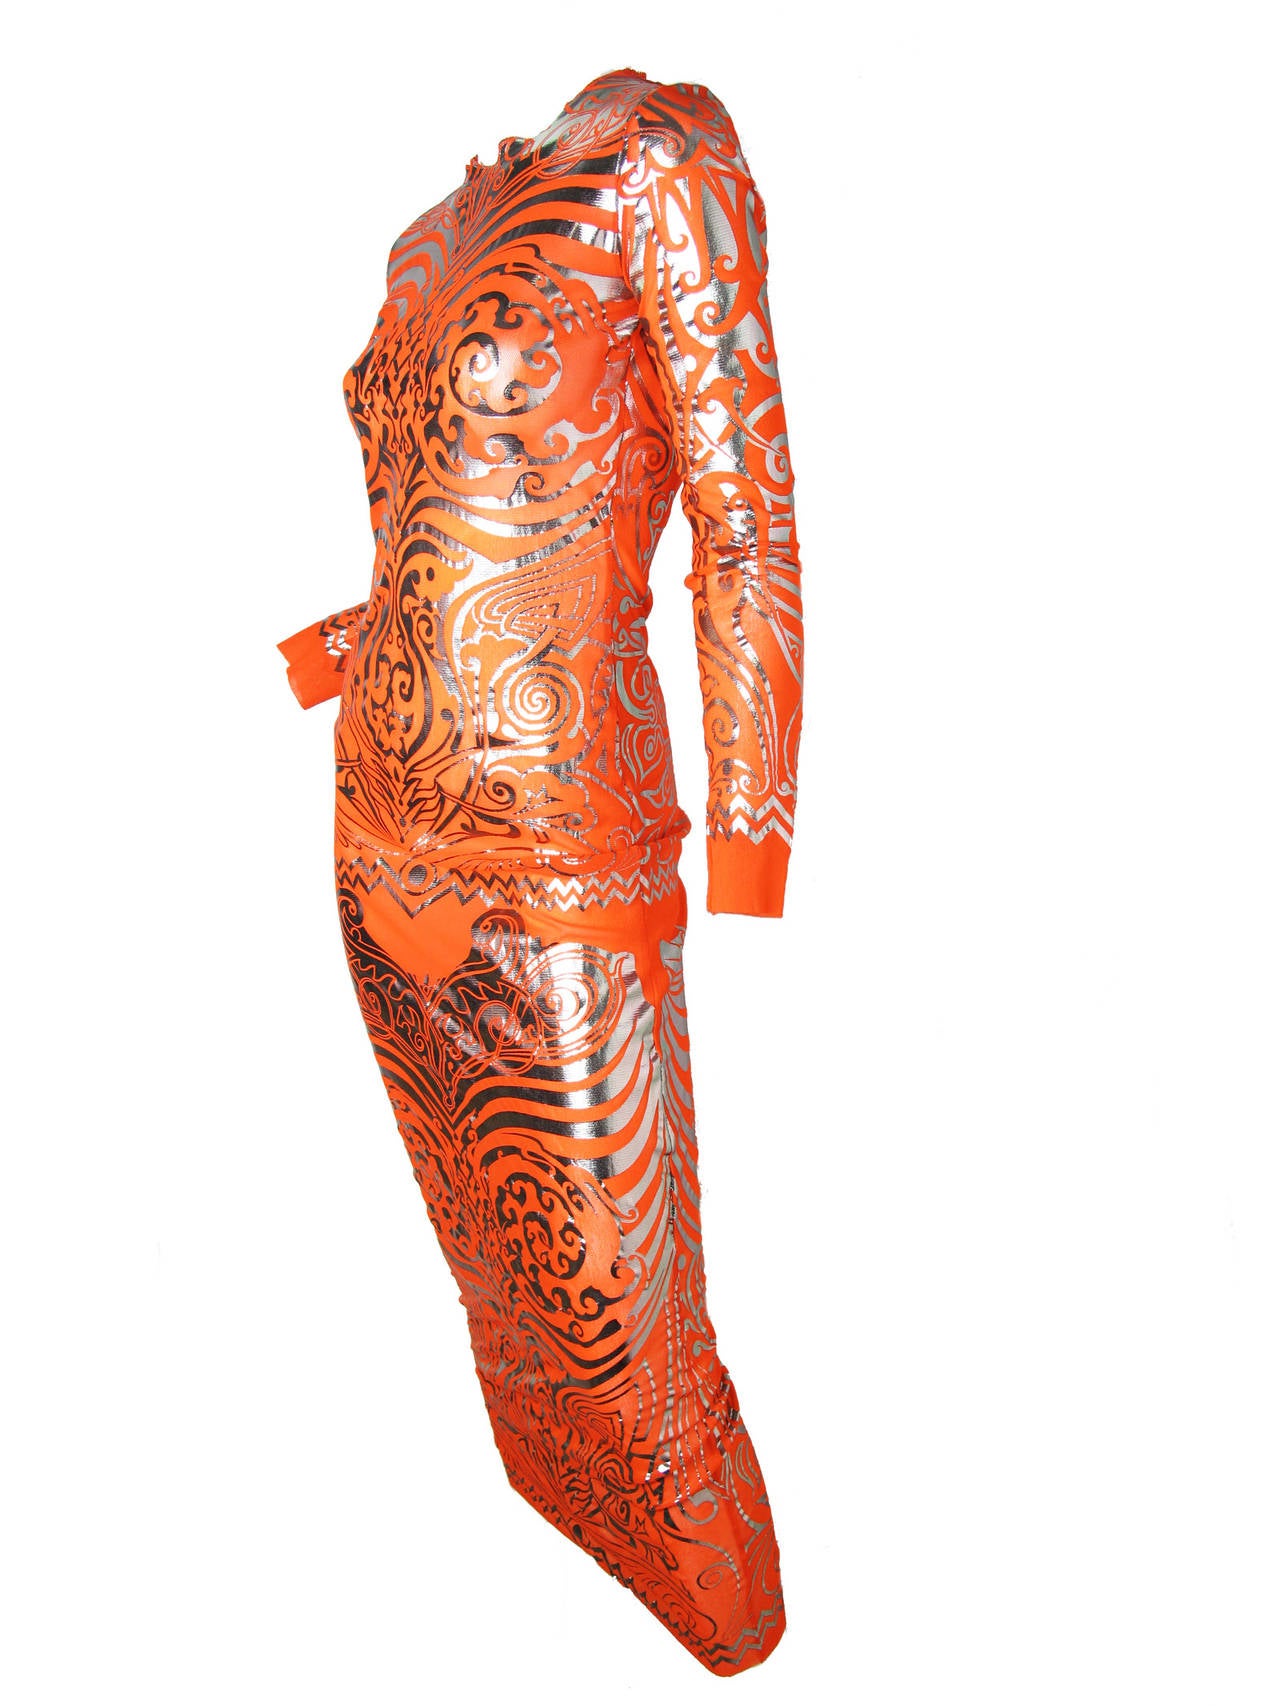 Women's 1990s Jean Paul Gaultier Space Age Skeleton Dress